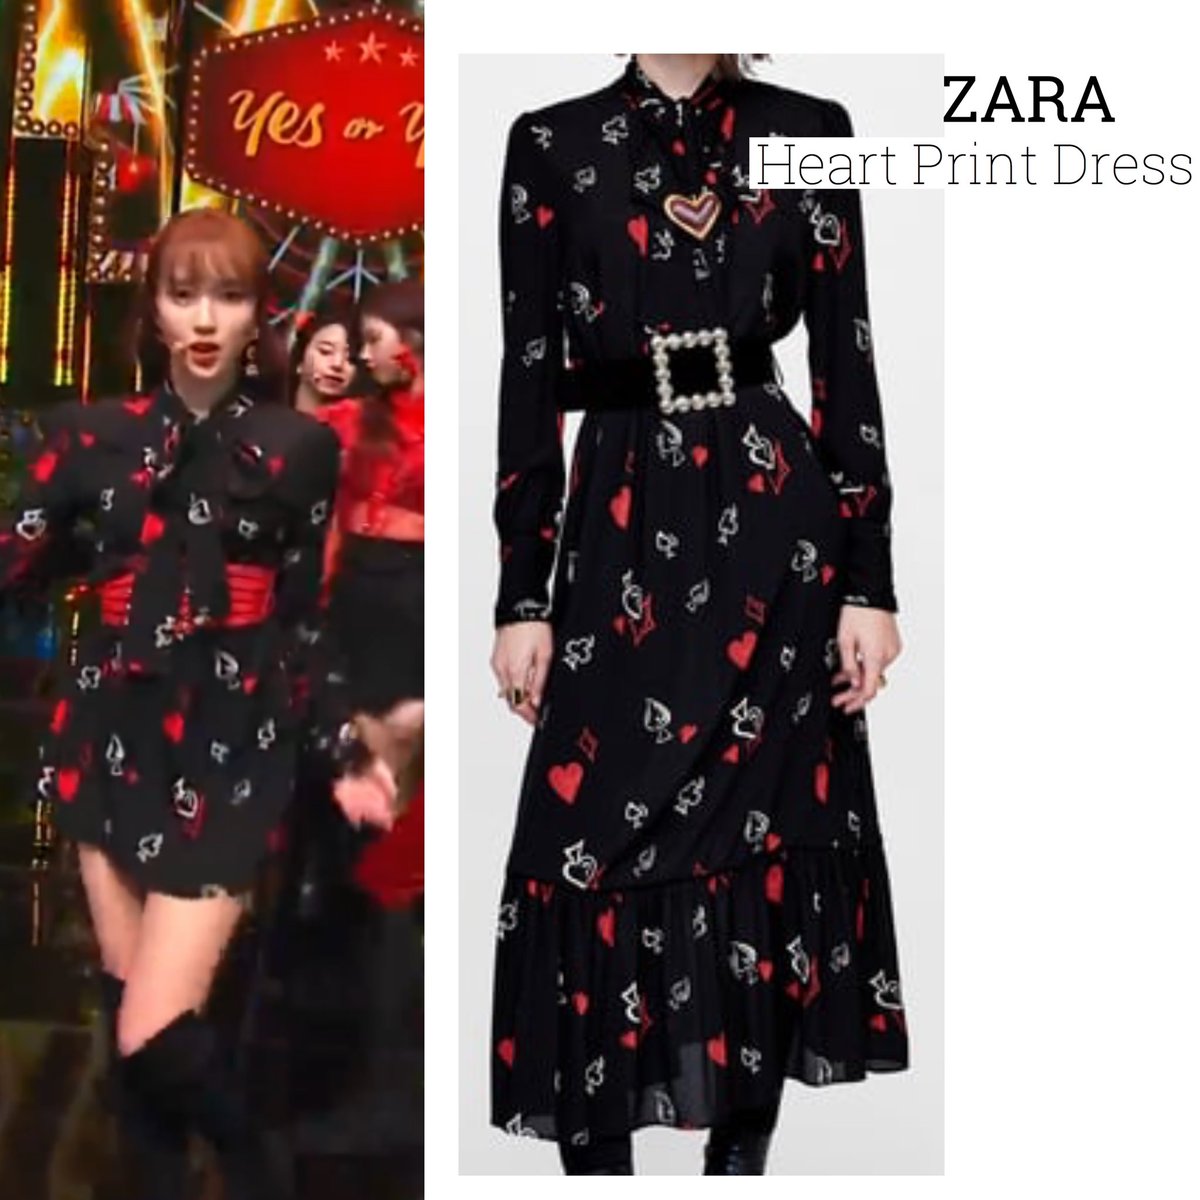 heart print dress zara